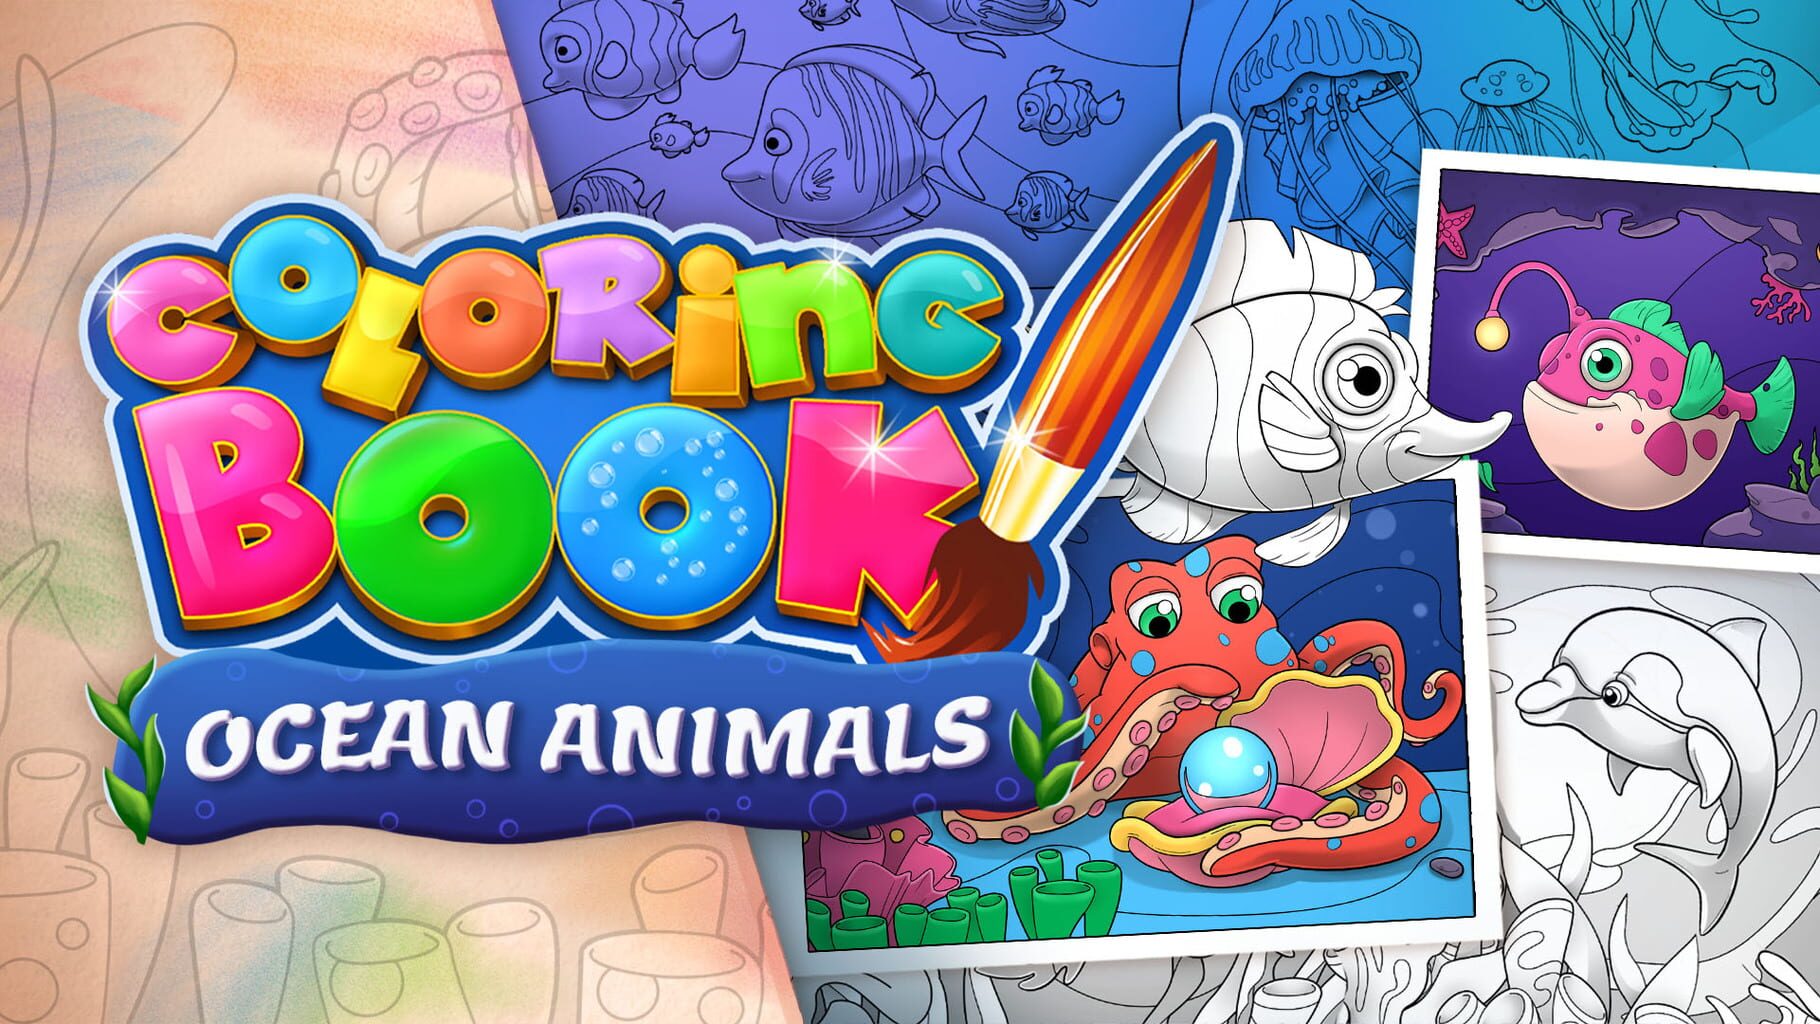 Coloring Book: Ocean Animals artwork